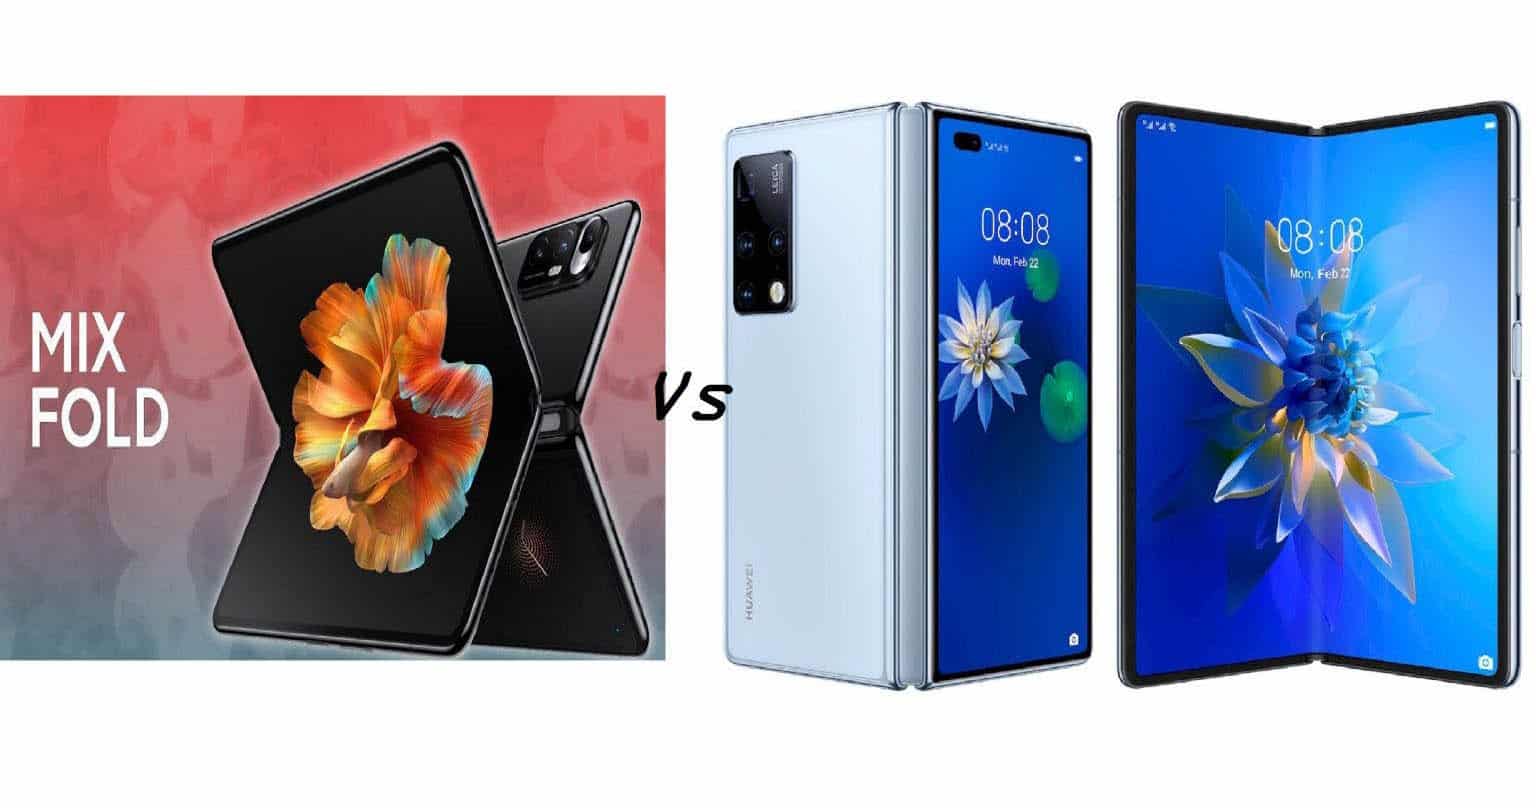 المقارنة المثالية لهواتف رجال الأعمال القابلة للطي Huawei Mate X2 المكتسح ضد 2 Xiaomi Mi Mix Fold المثالي